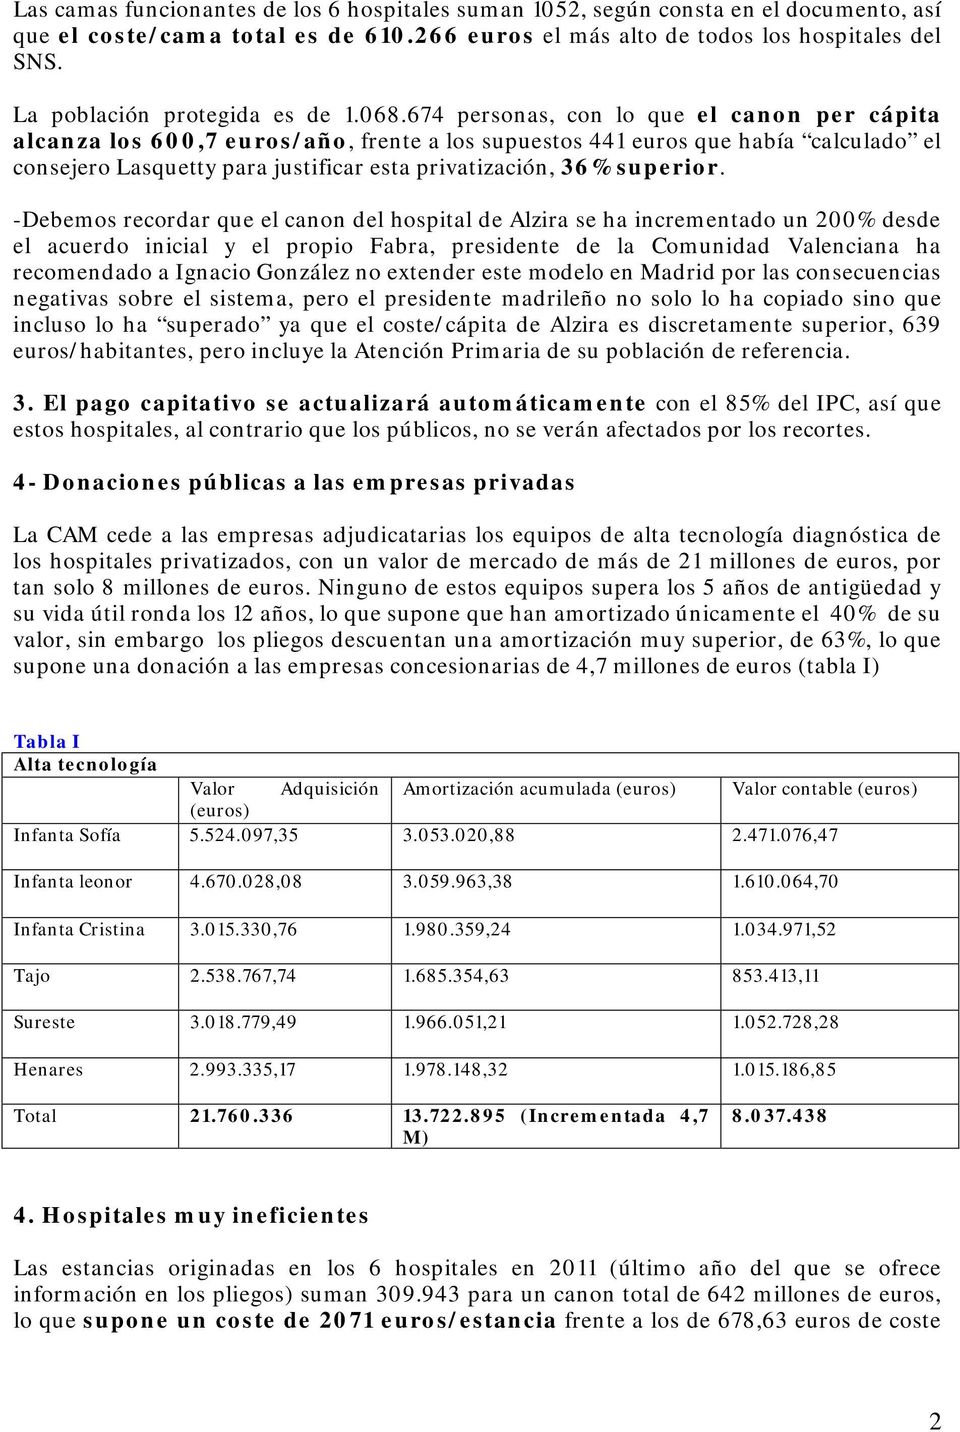 674 personas, con lo que el canon per cápita alcanza los 600,7 euros/año, frente a los supuestos 441 euros que había calculado el consejero Lasquetty para justificar esta privatización, 36% superior.